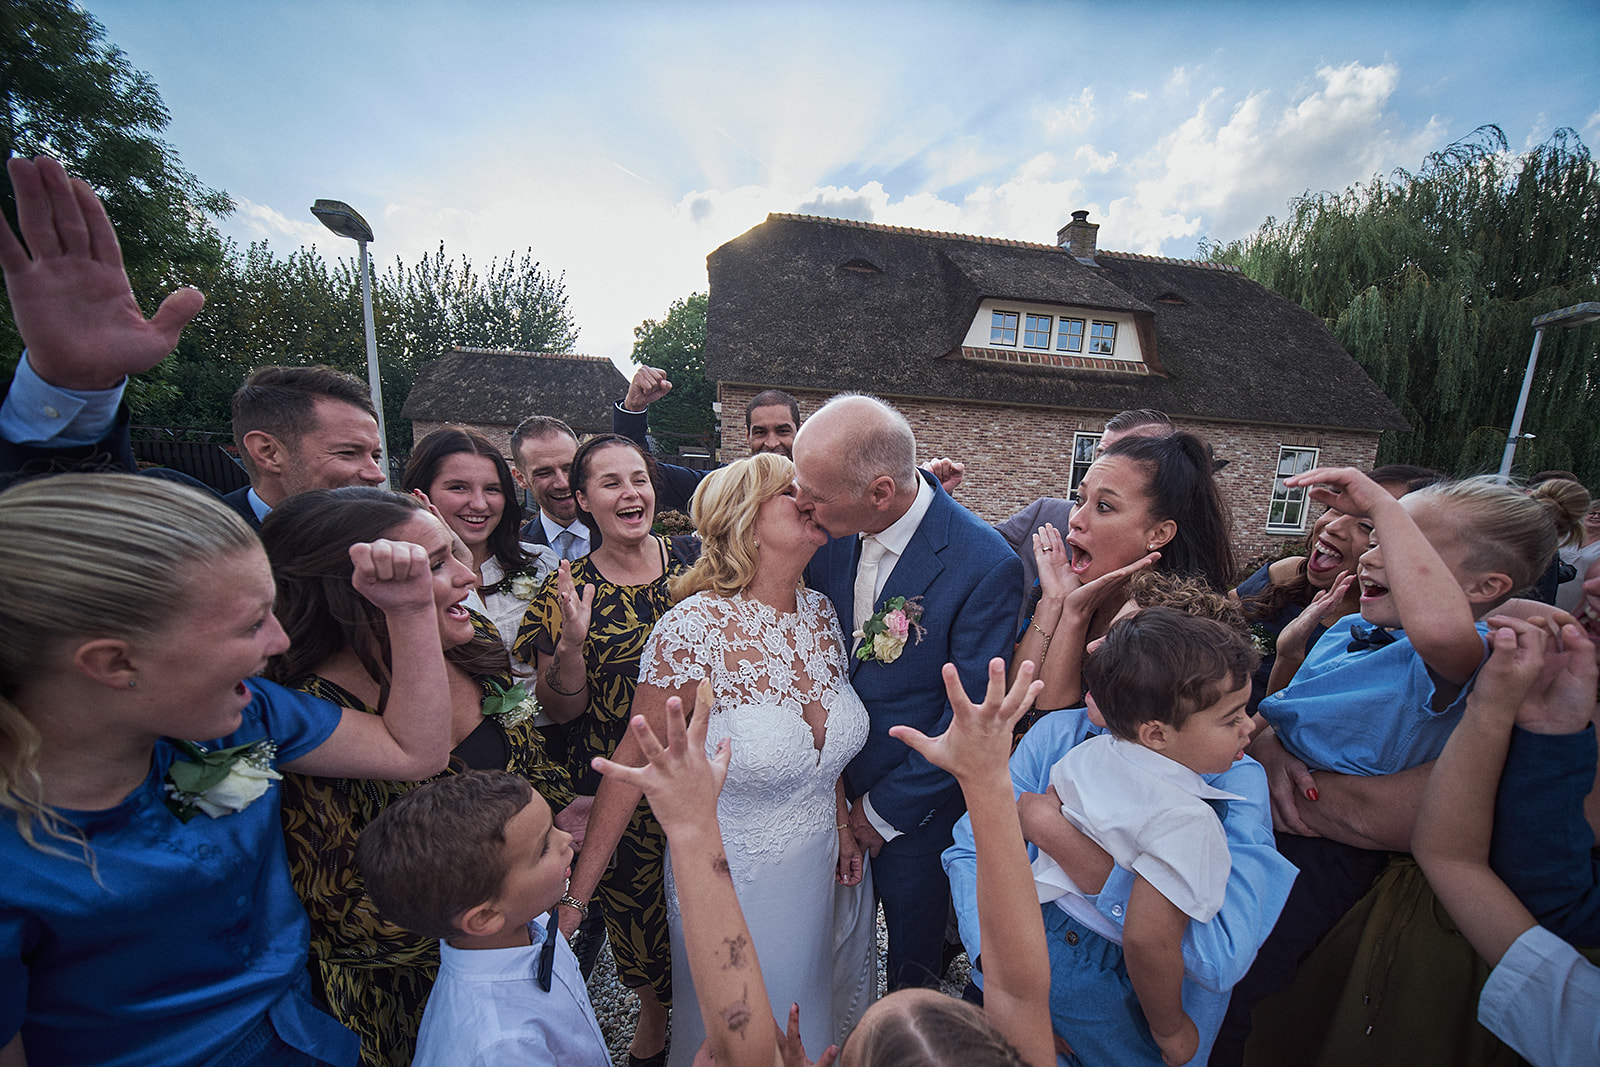 Bruidsfotografie bij 't Hof van Hoenkoop: het romantische huwelijk van Jopie en Kees, vastgelegd door Stefan Segers